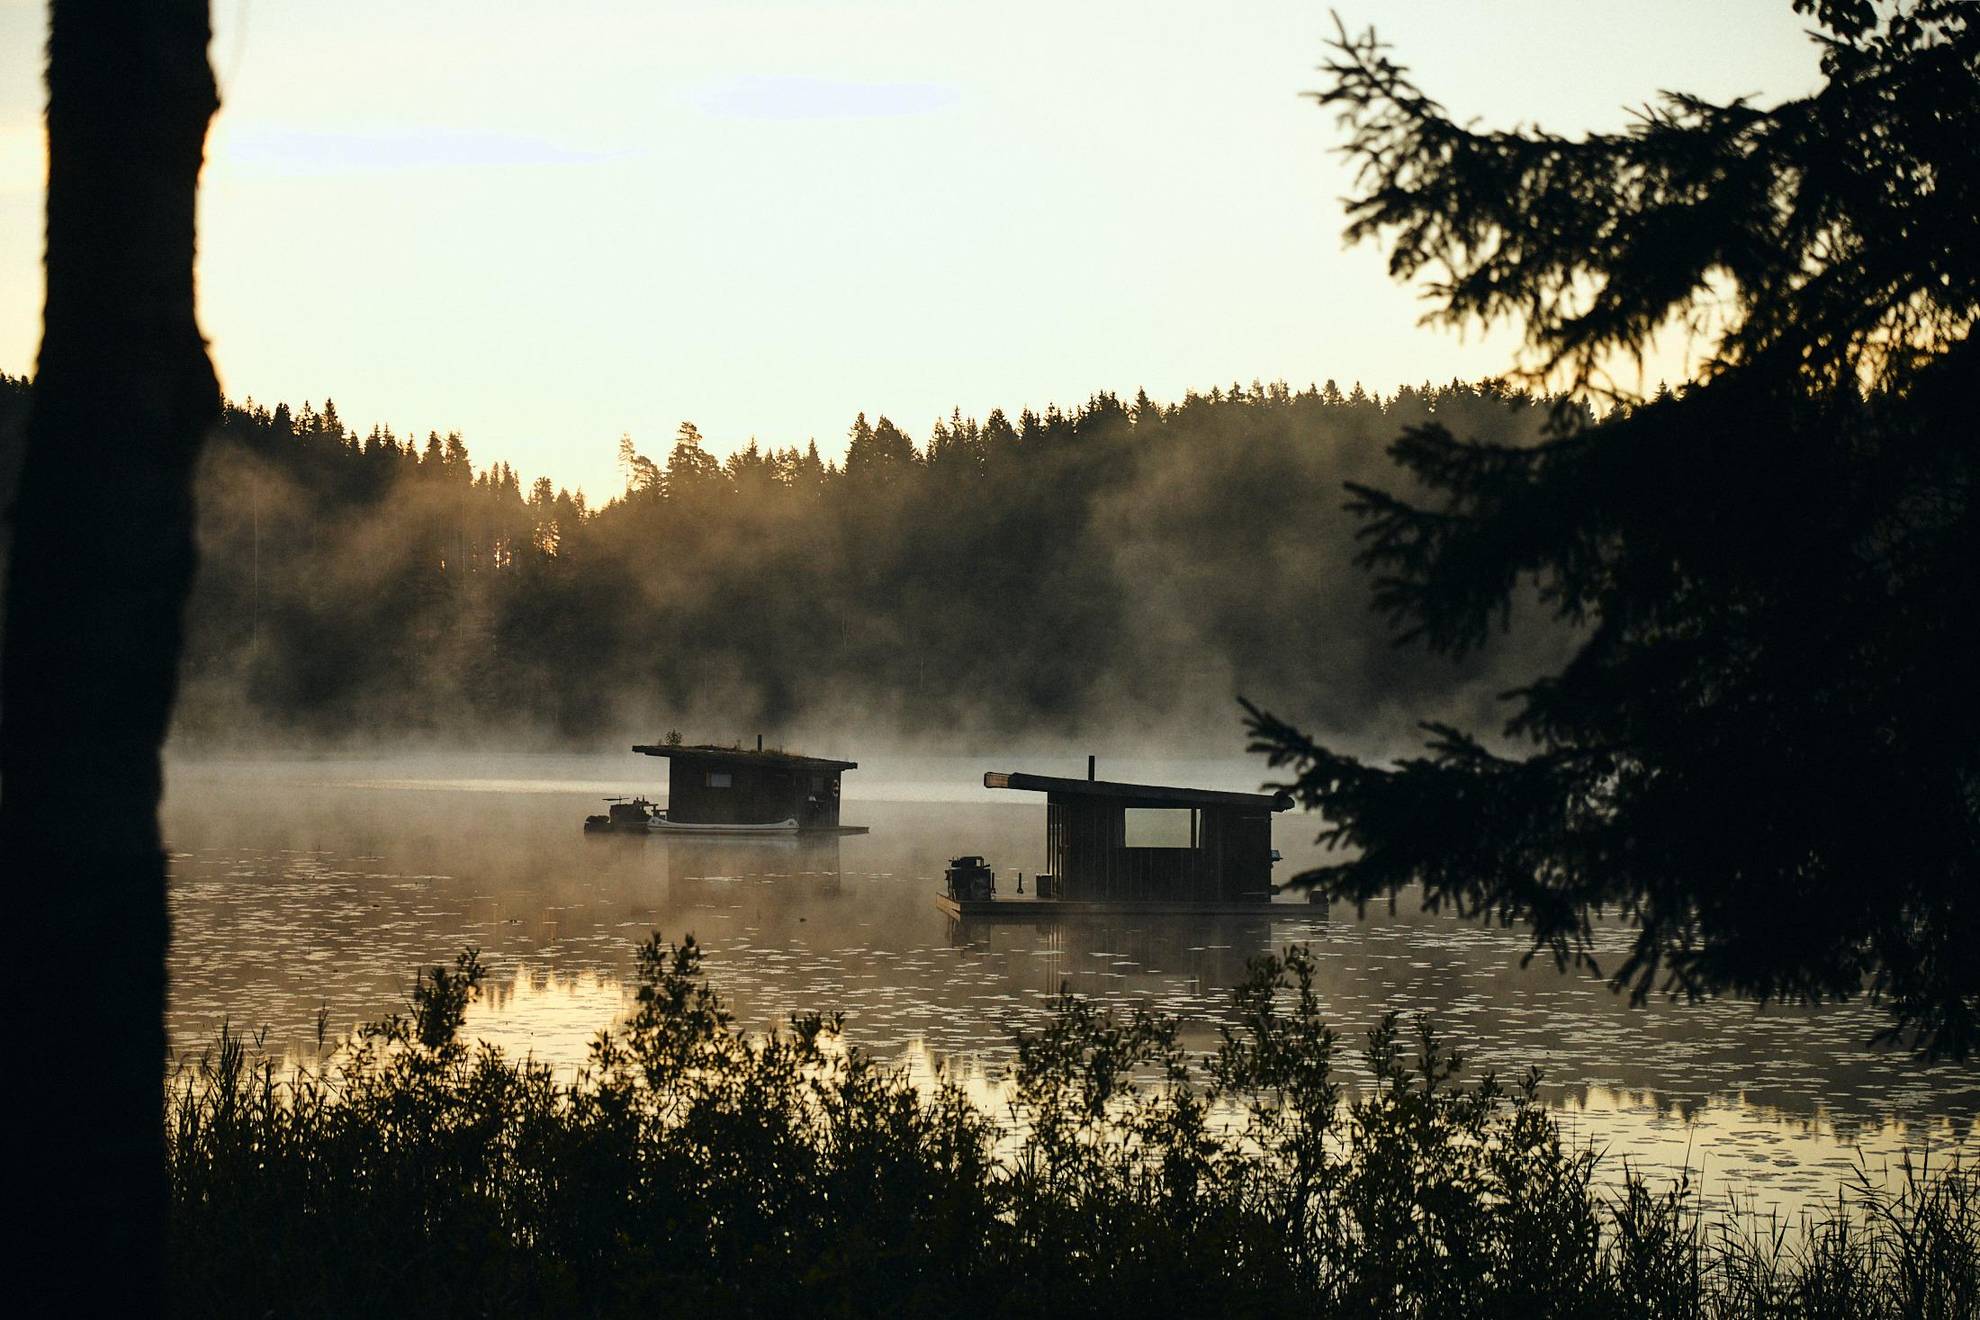 Bootshäuser treiben inmitten eines Waldsees, welcher umgeben von Nadelbäumen. Der aufsteigender Nebel sorgt für eine mystische Atmosphäre.